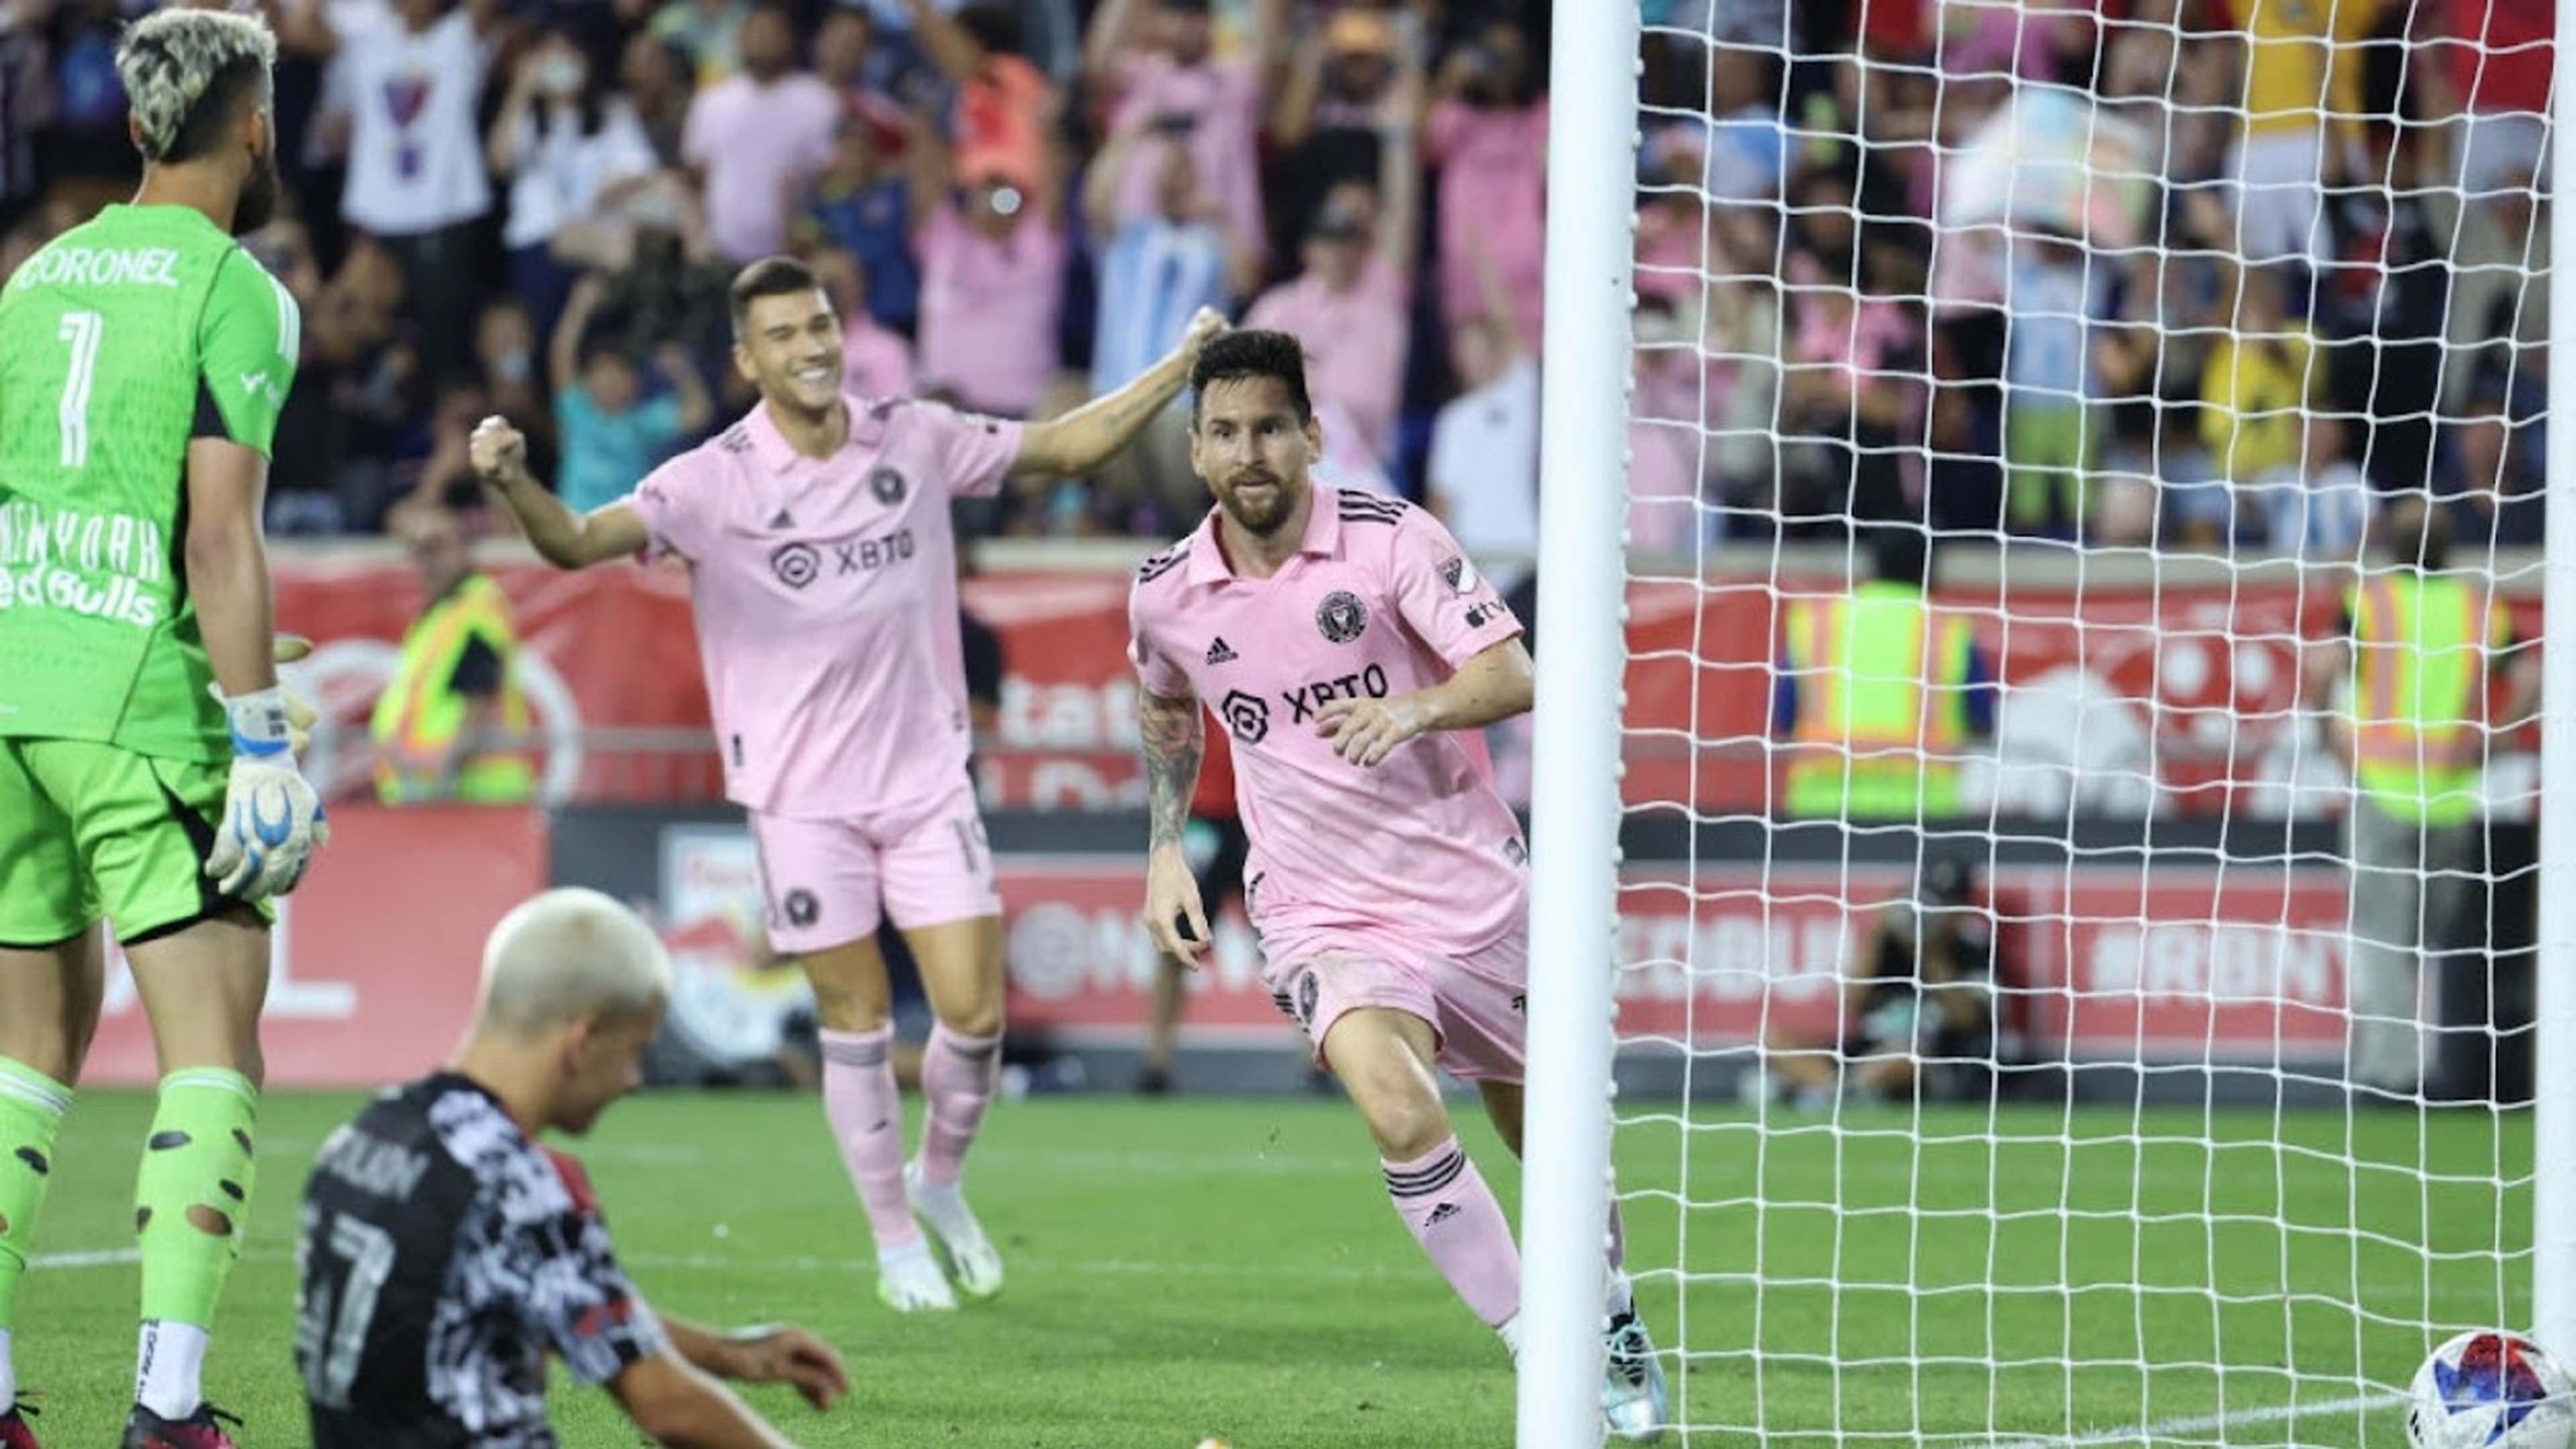 VIDEO - ¡En la MLS también! Lionel Messi tuvo su estreno en el torneo con  otro golazo | Goal.com Argentina